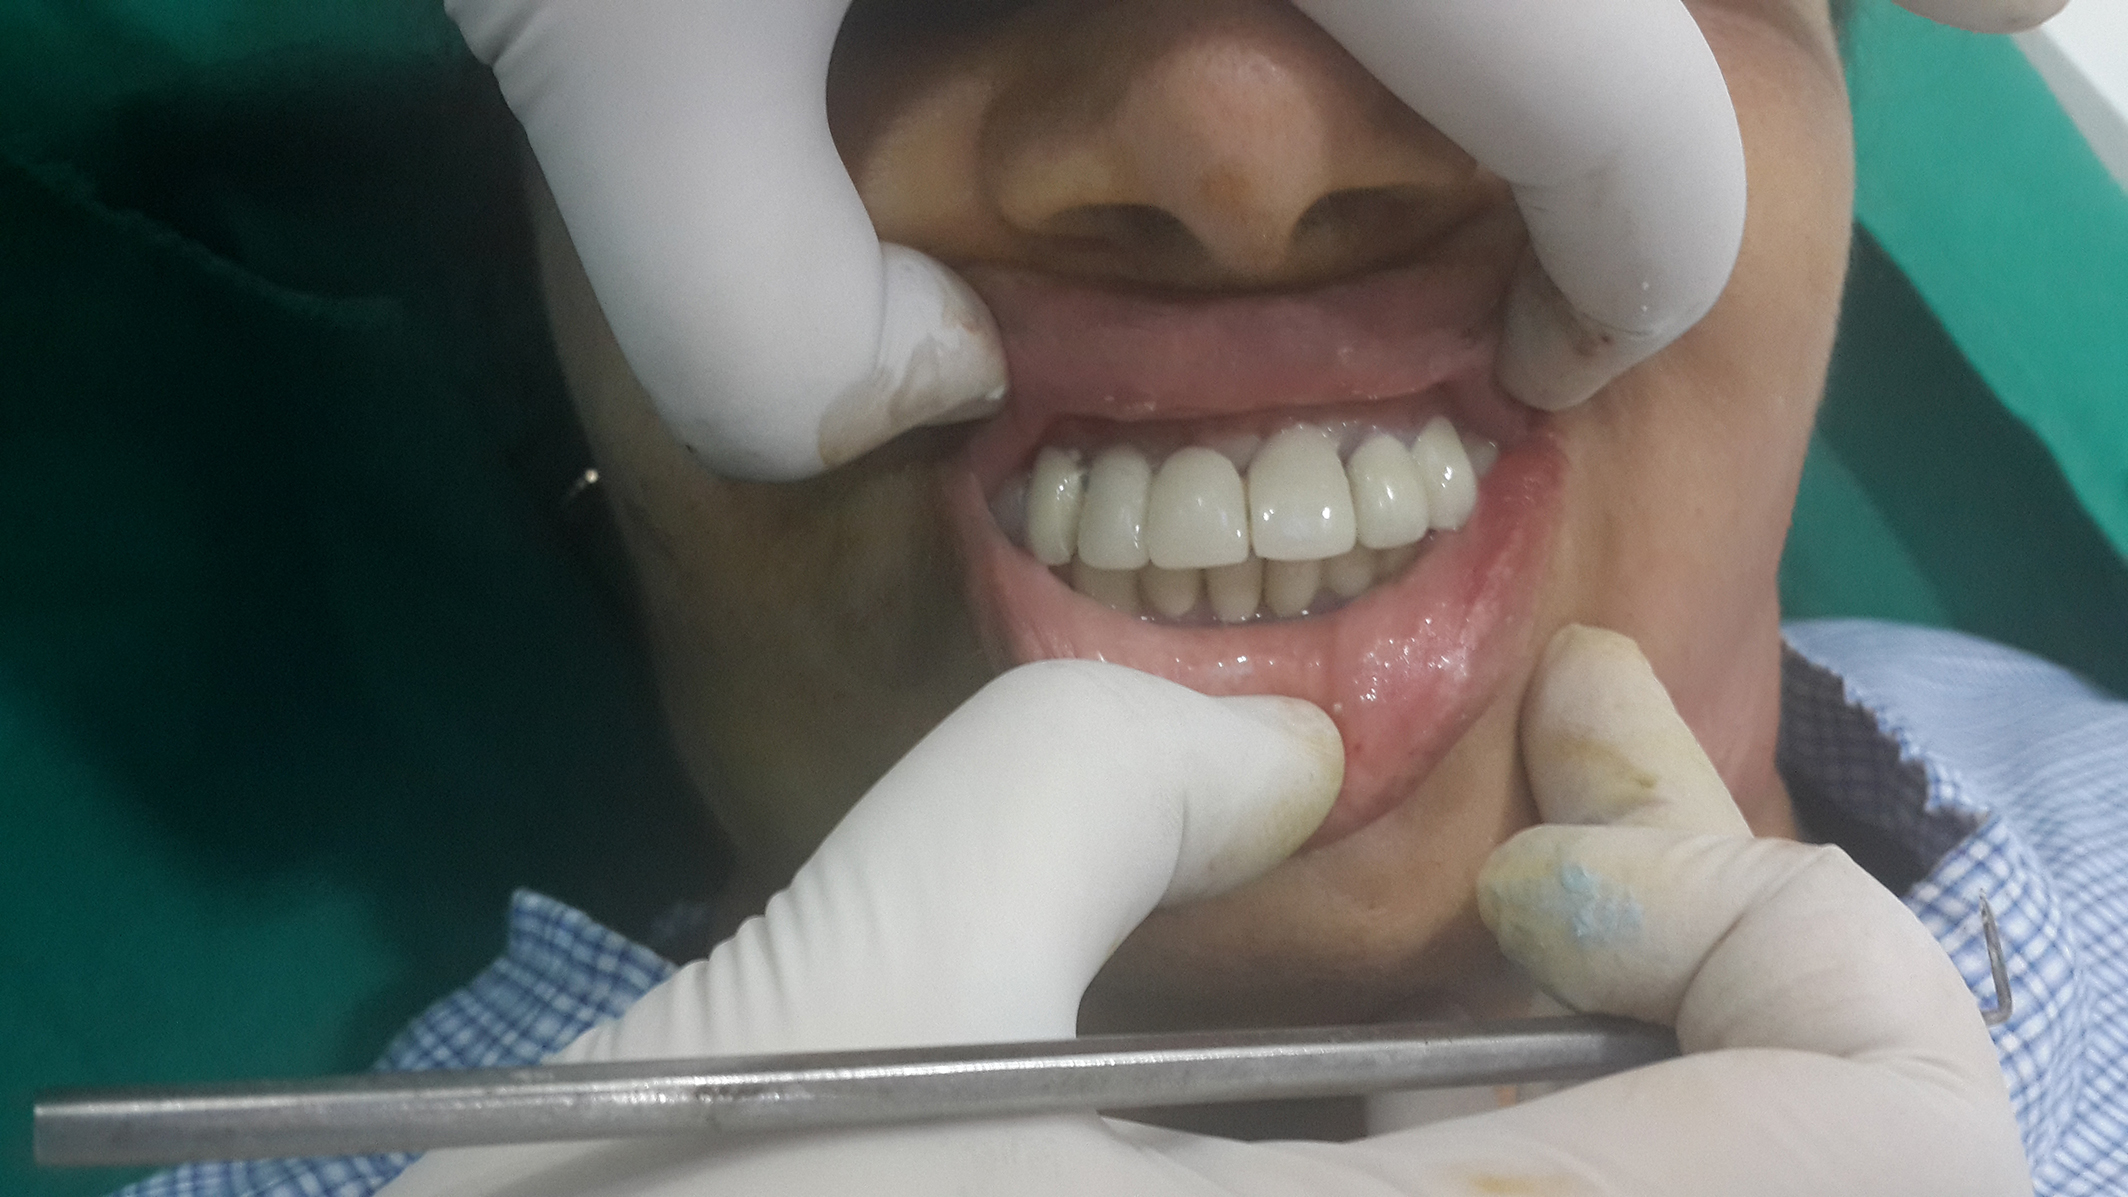 cheap dental implants jalandhar punjab